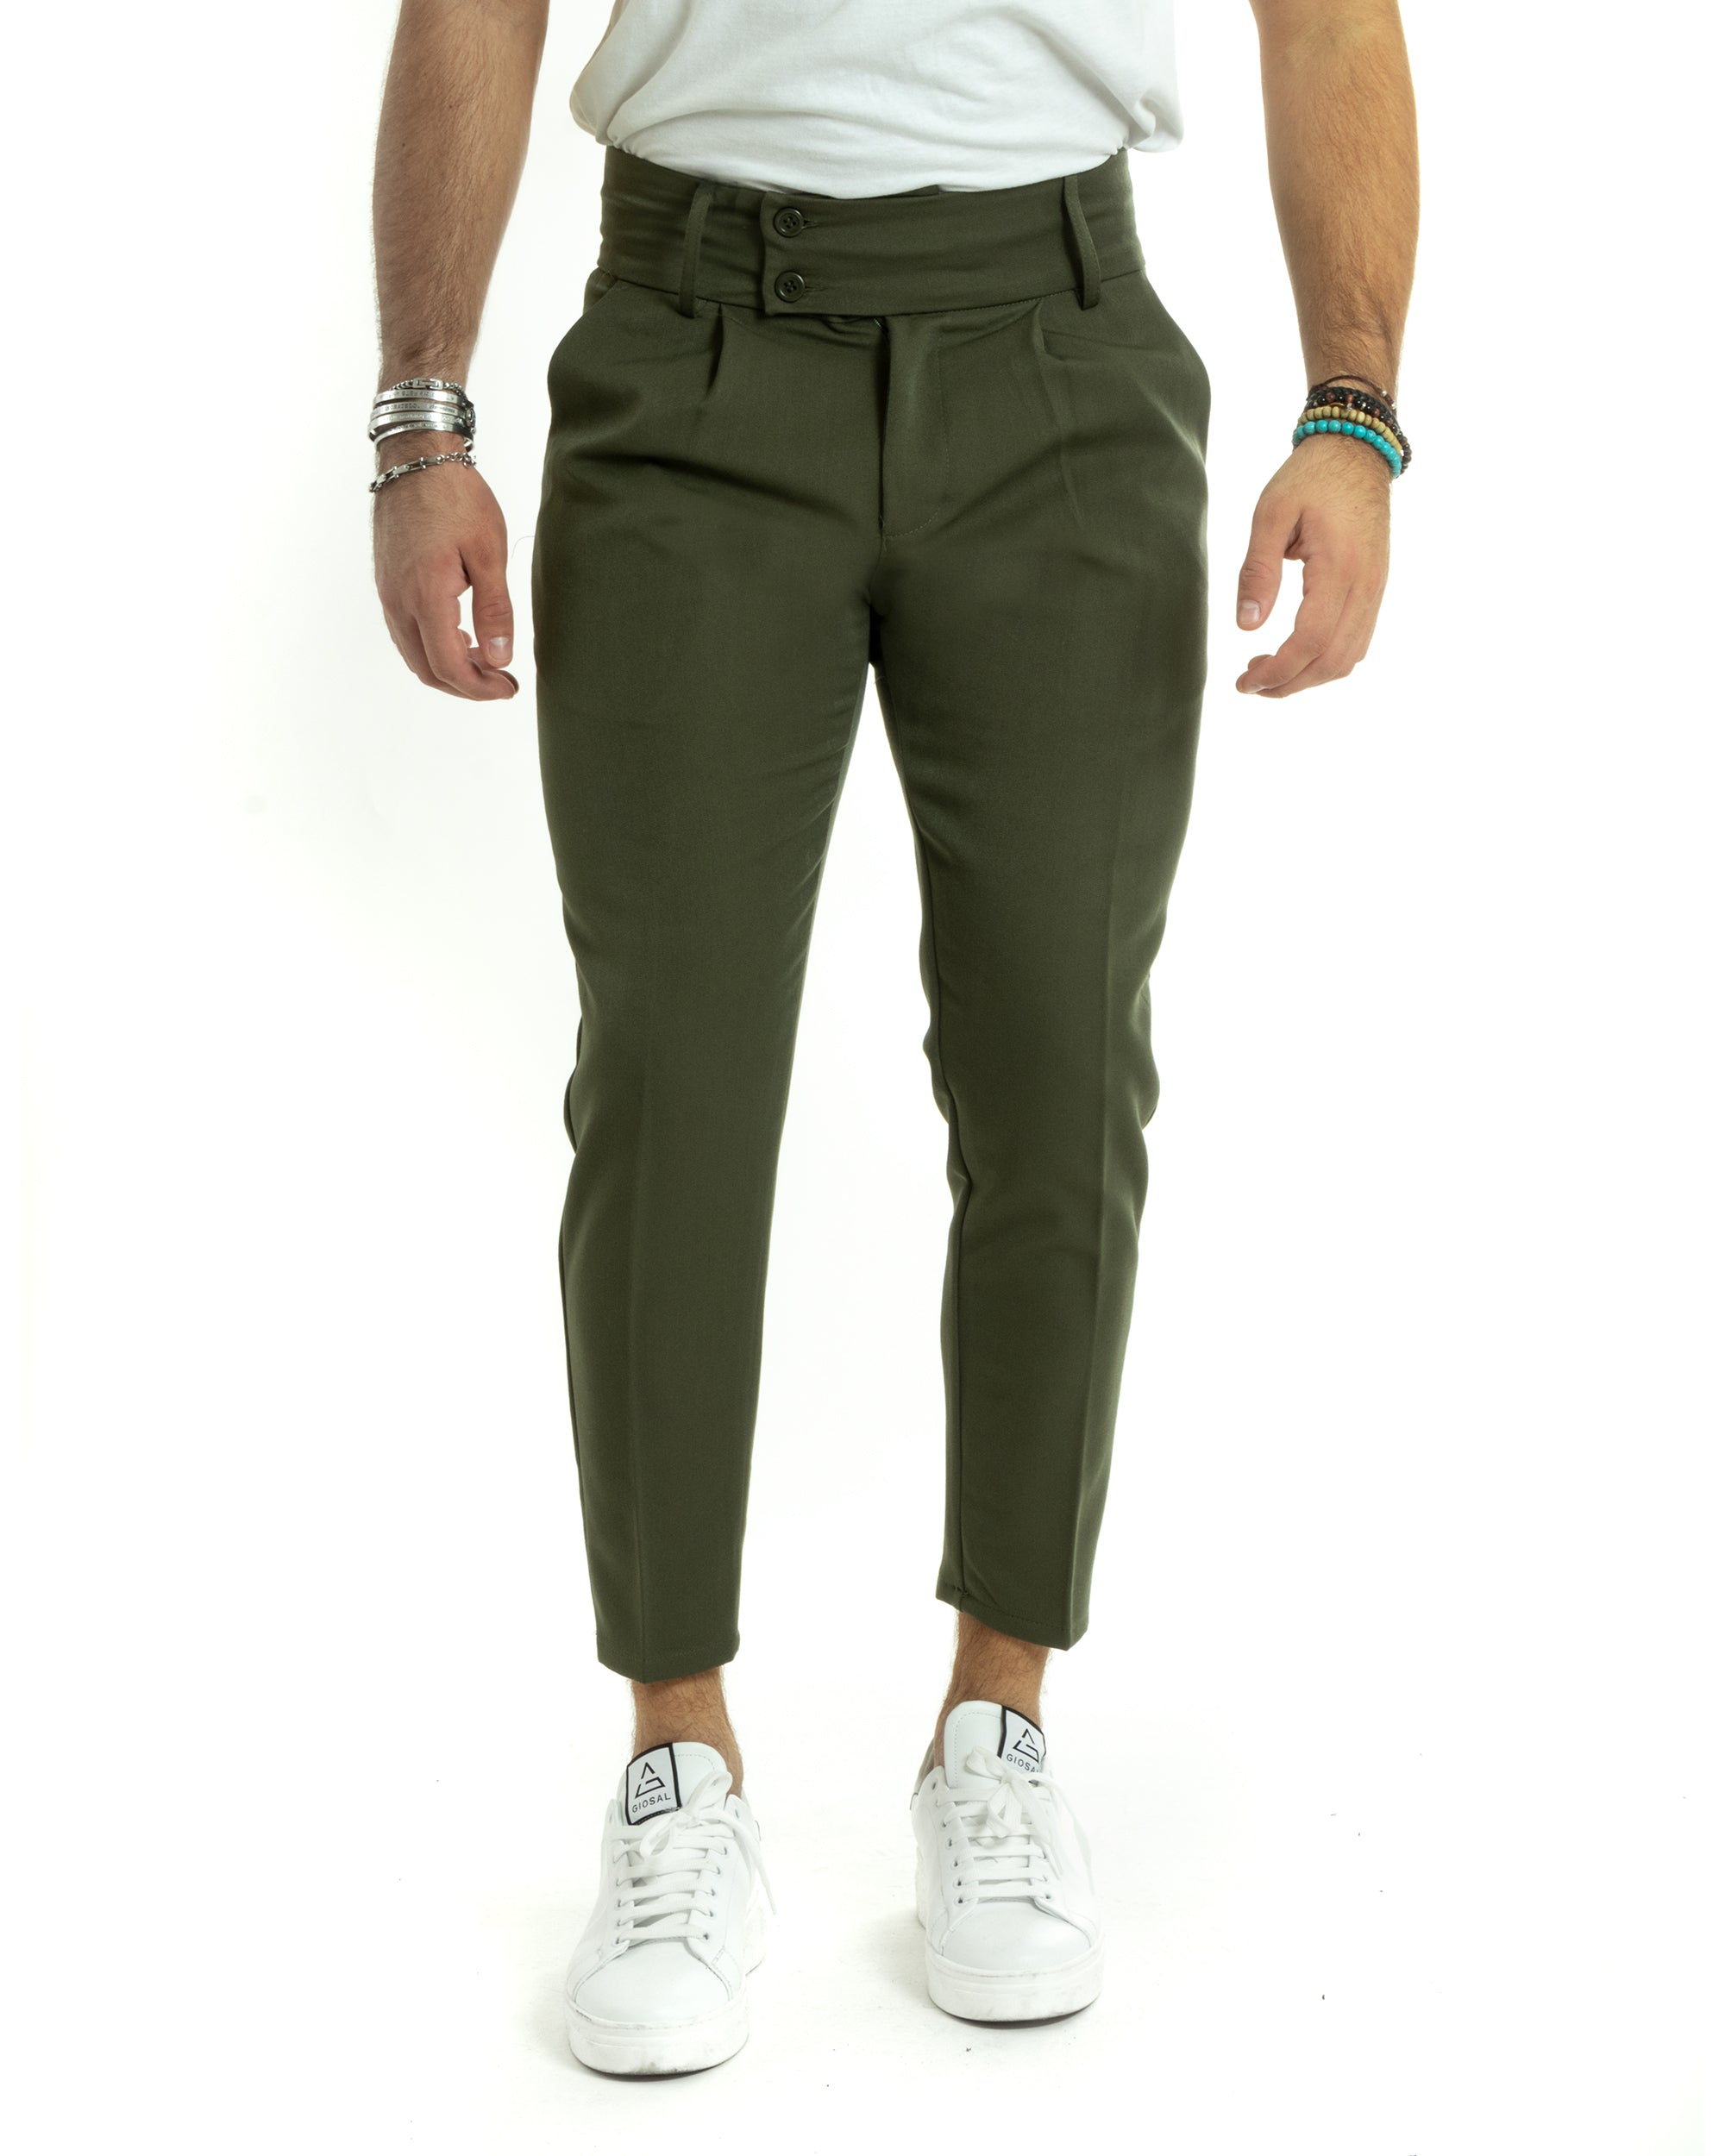 Pantaloni Uomo Viscosa Tasca America Vita Alta Classico Pinces Abbottonatura Allungata Casual Verde Militare GIOSAL-P5986A